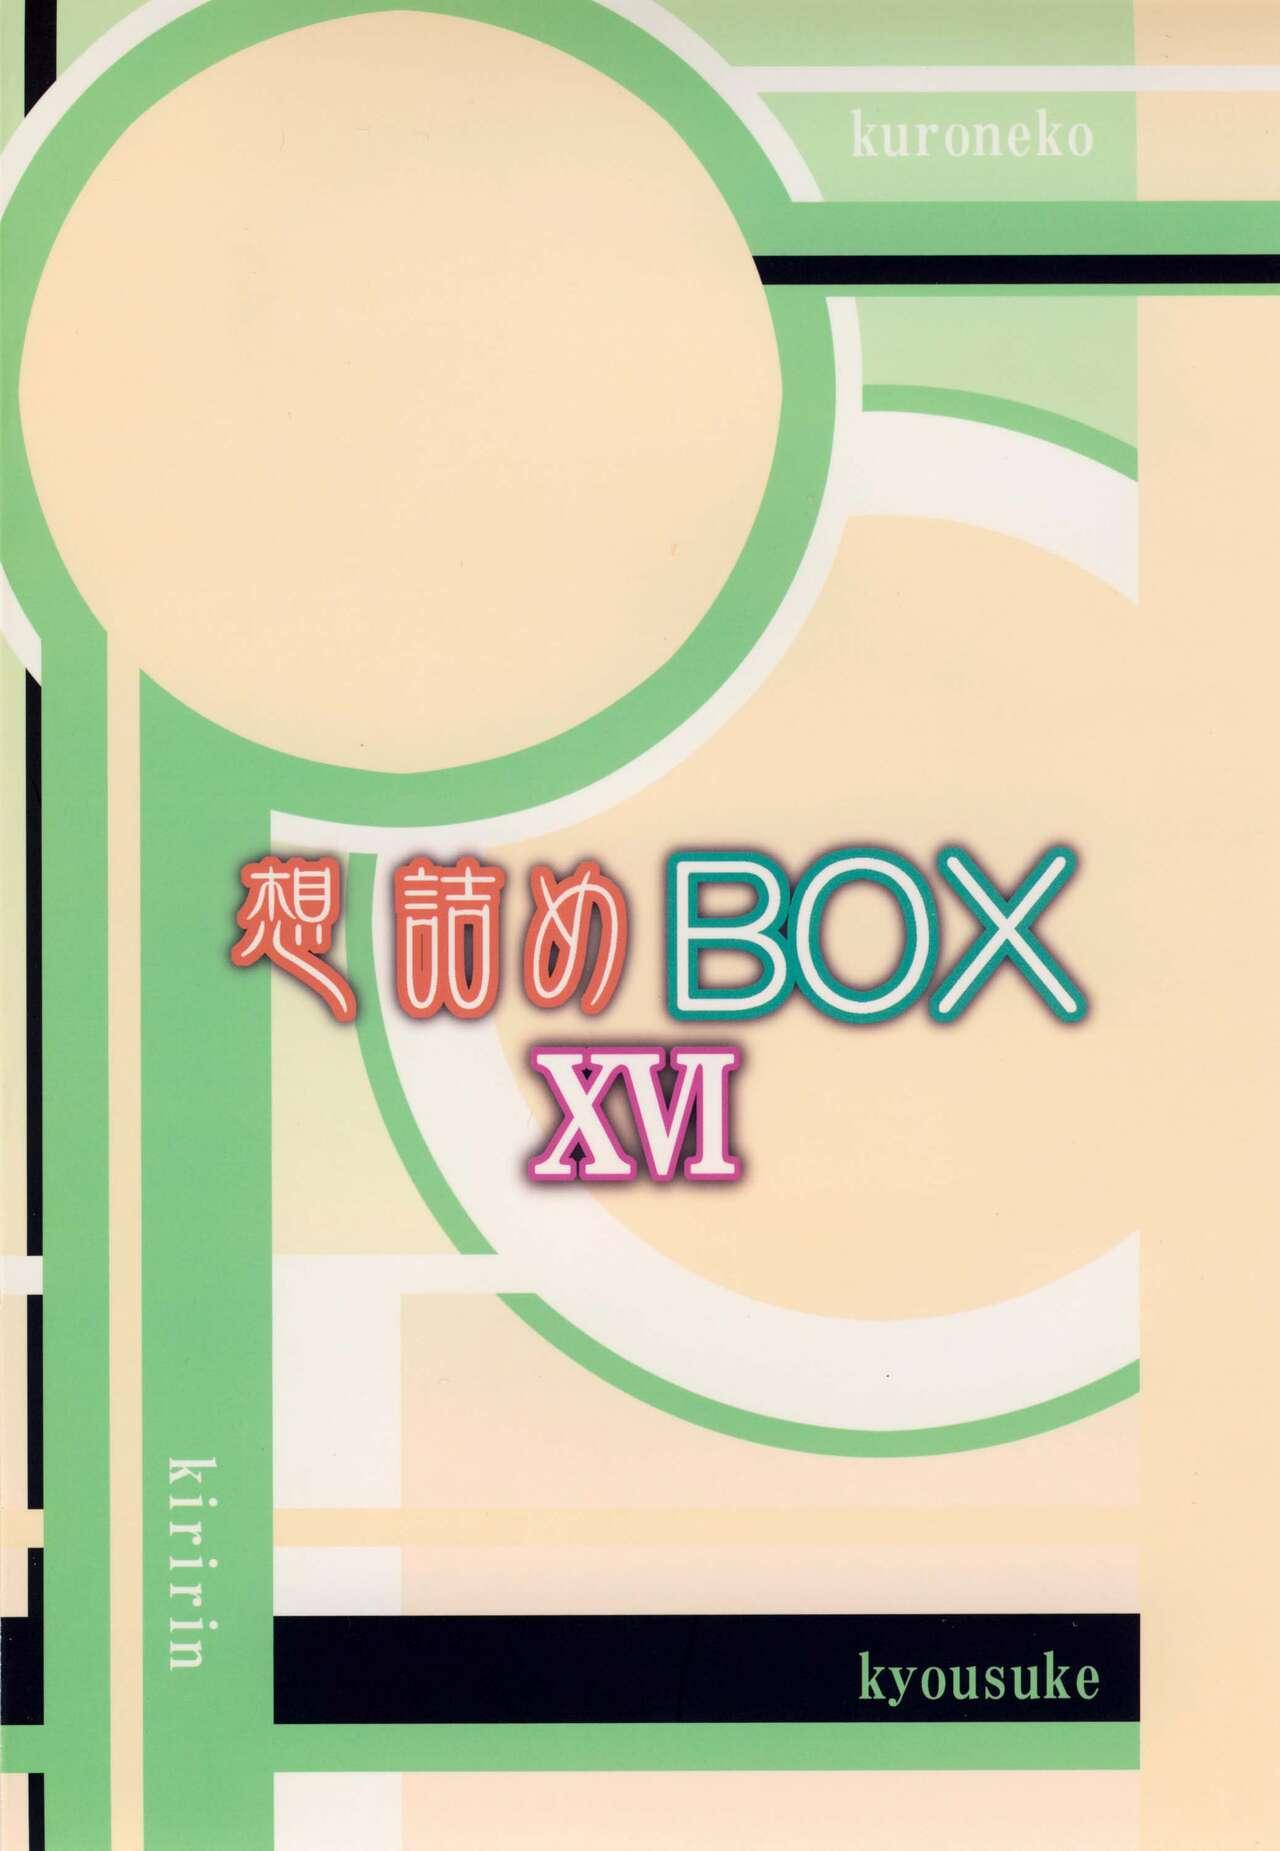 Omodume BOX XVI 28